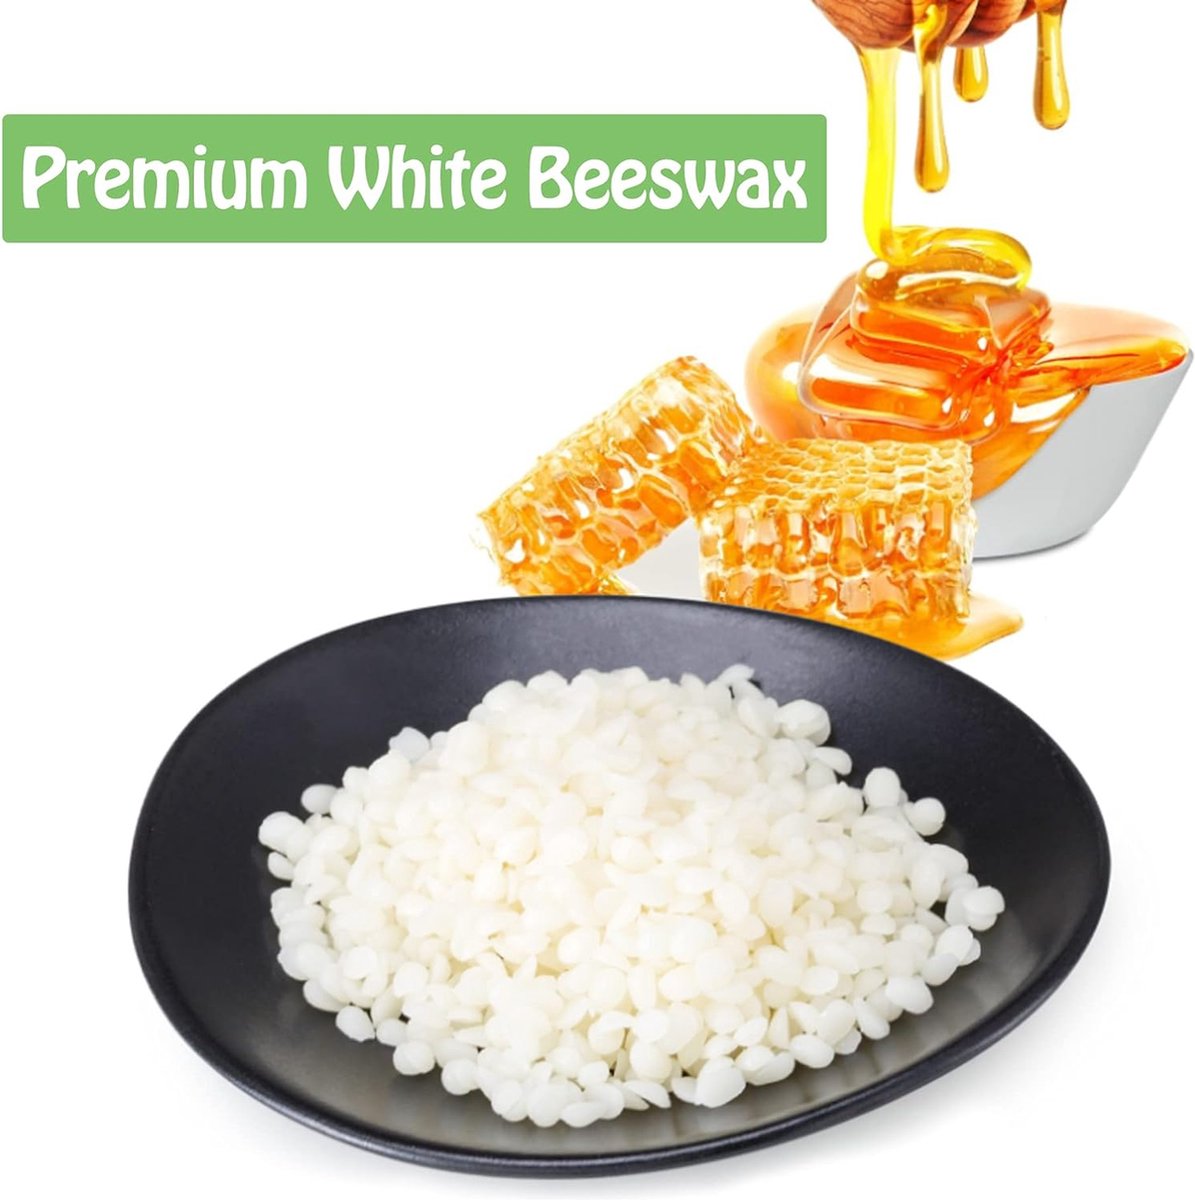 Premium White Beeswax